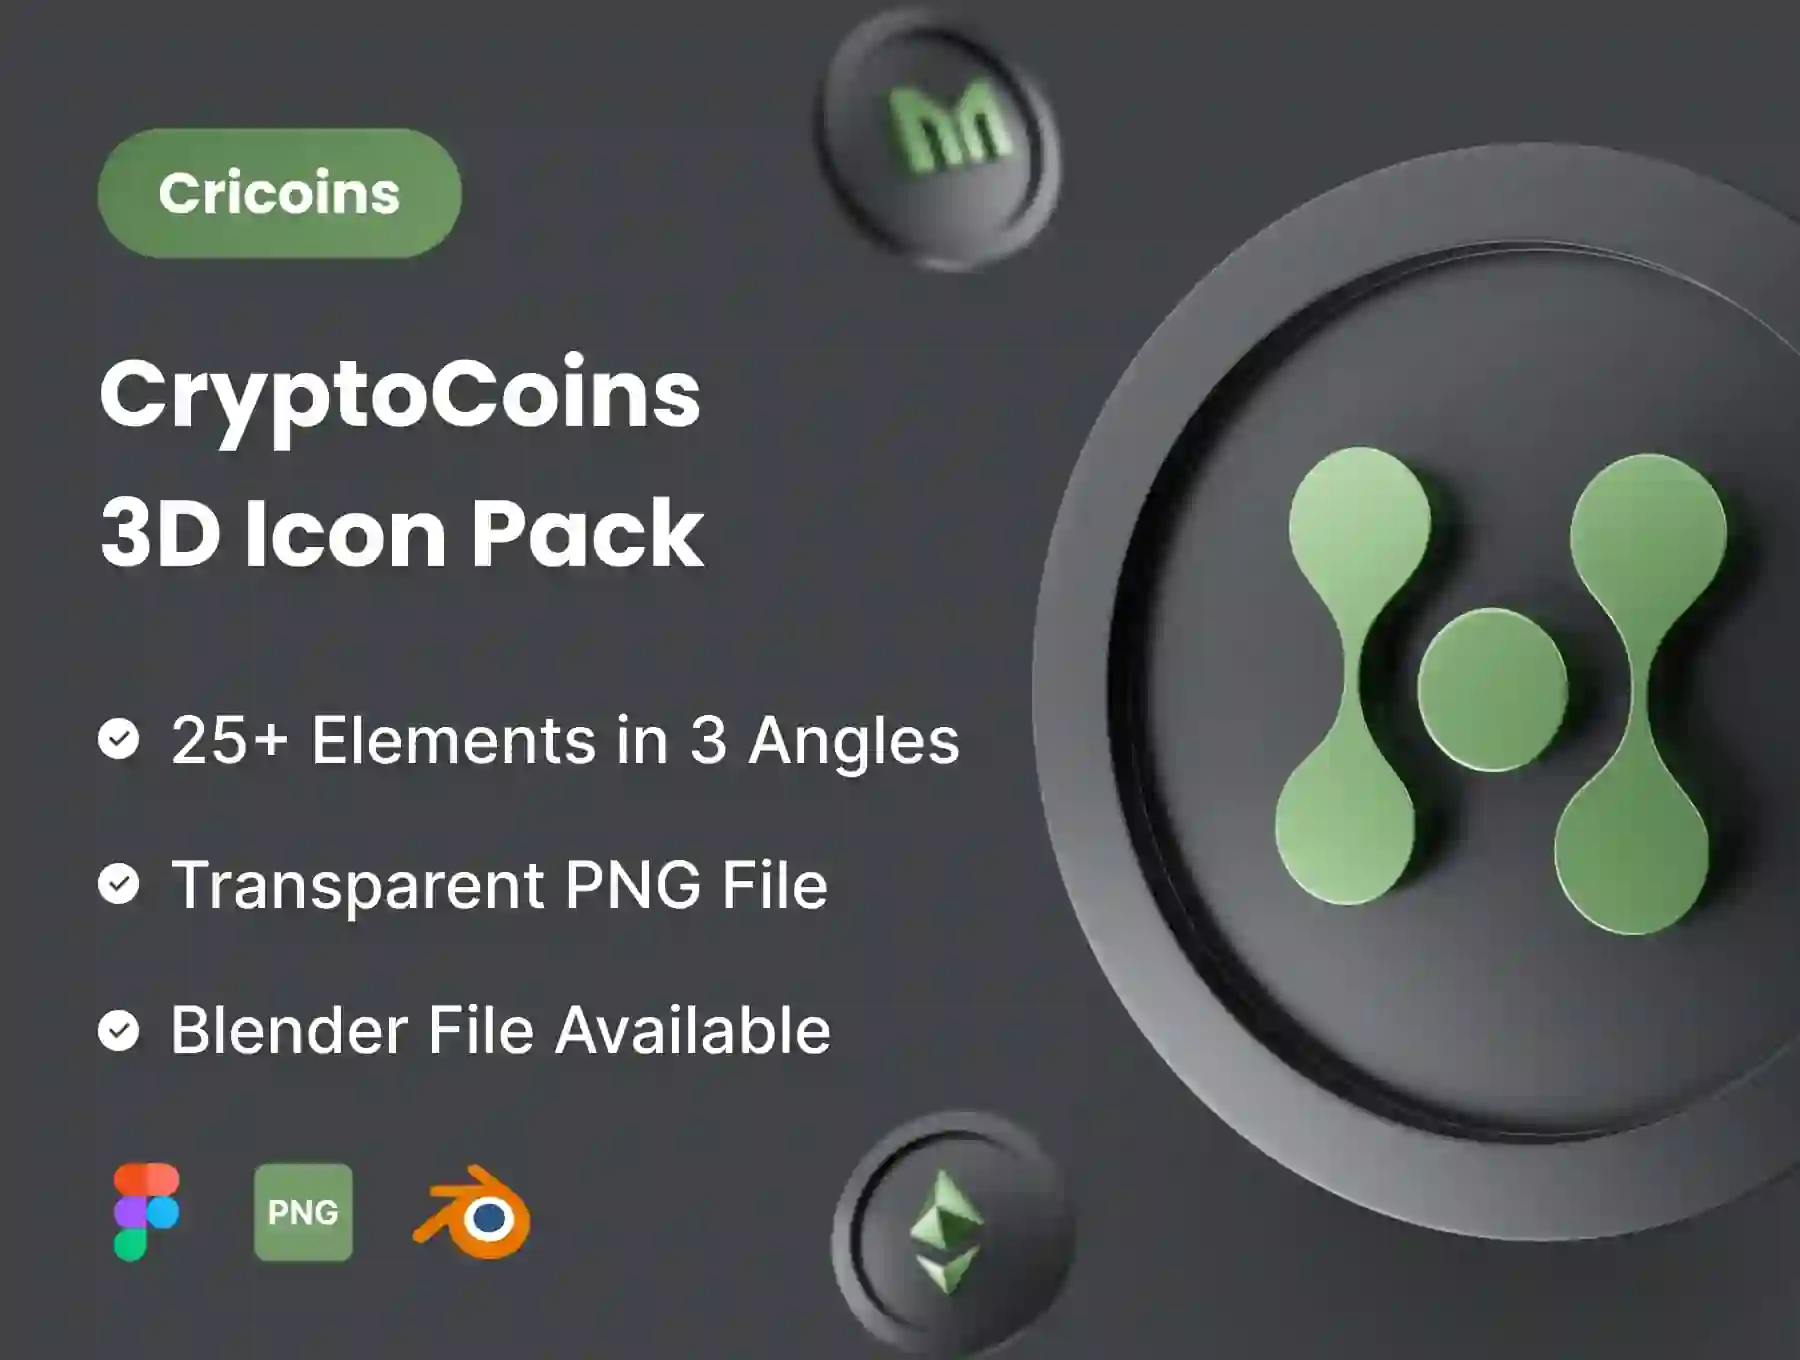 Cricoins - Cryptocoins 3D Icon Pack